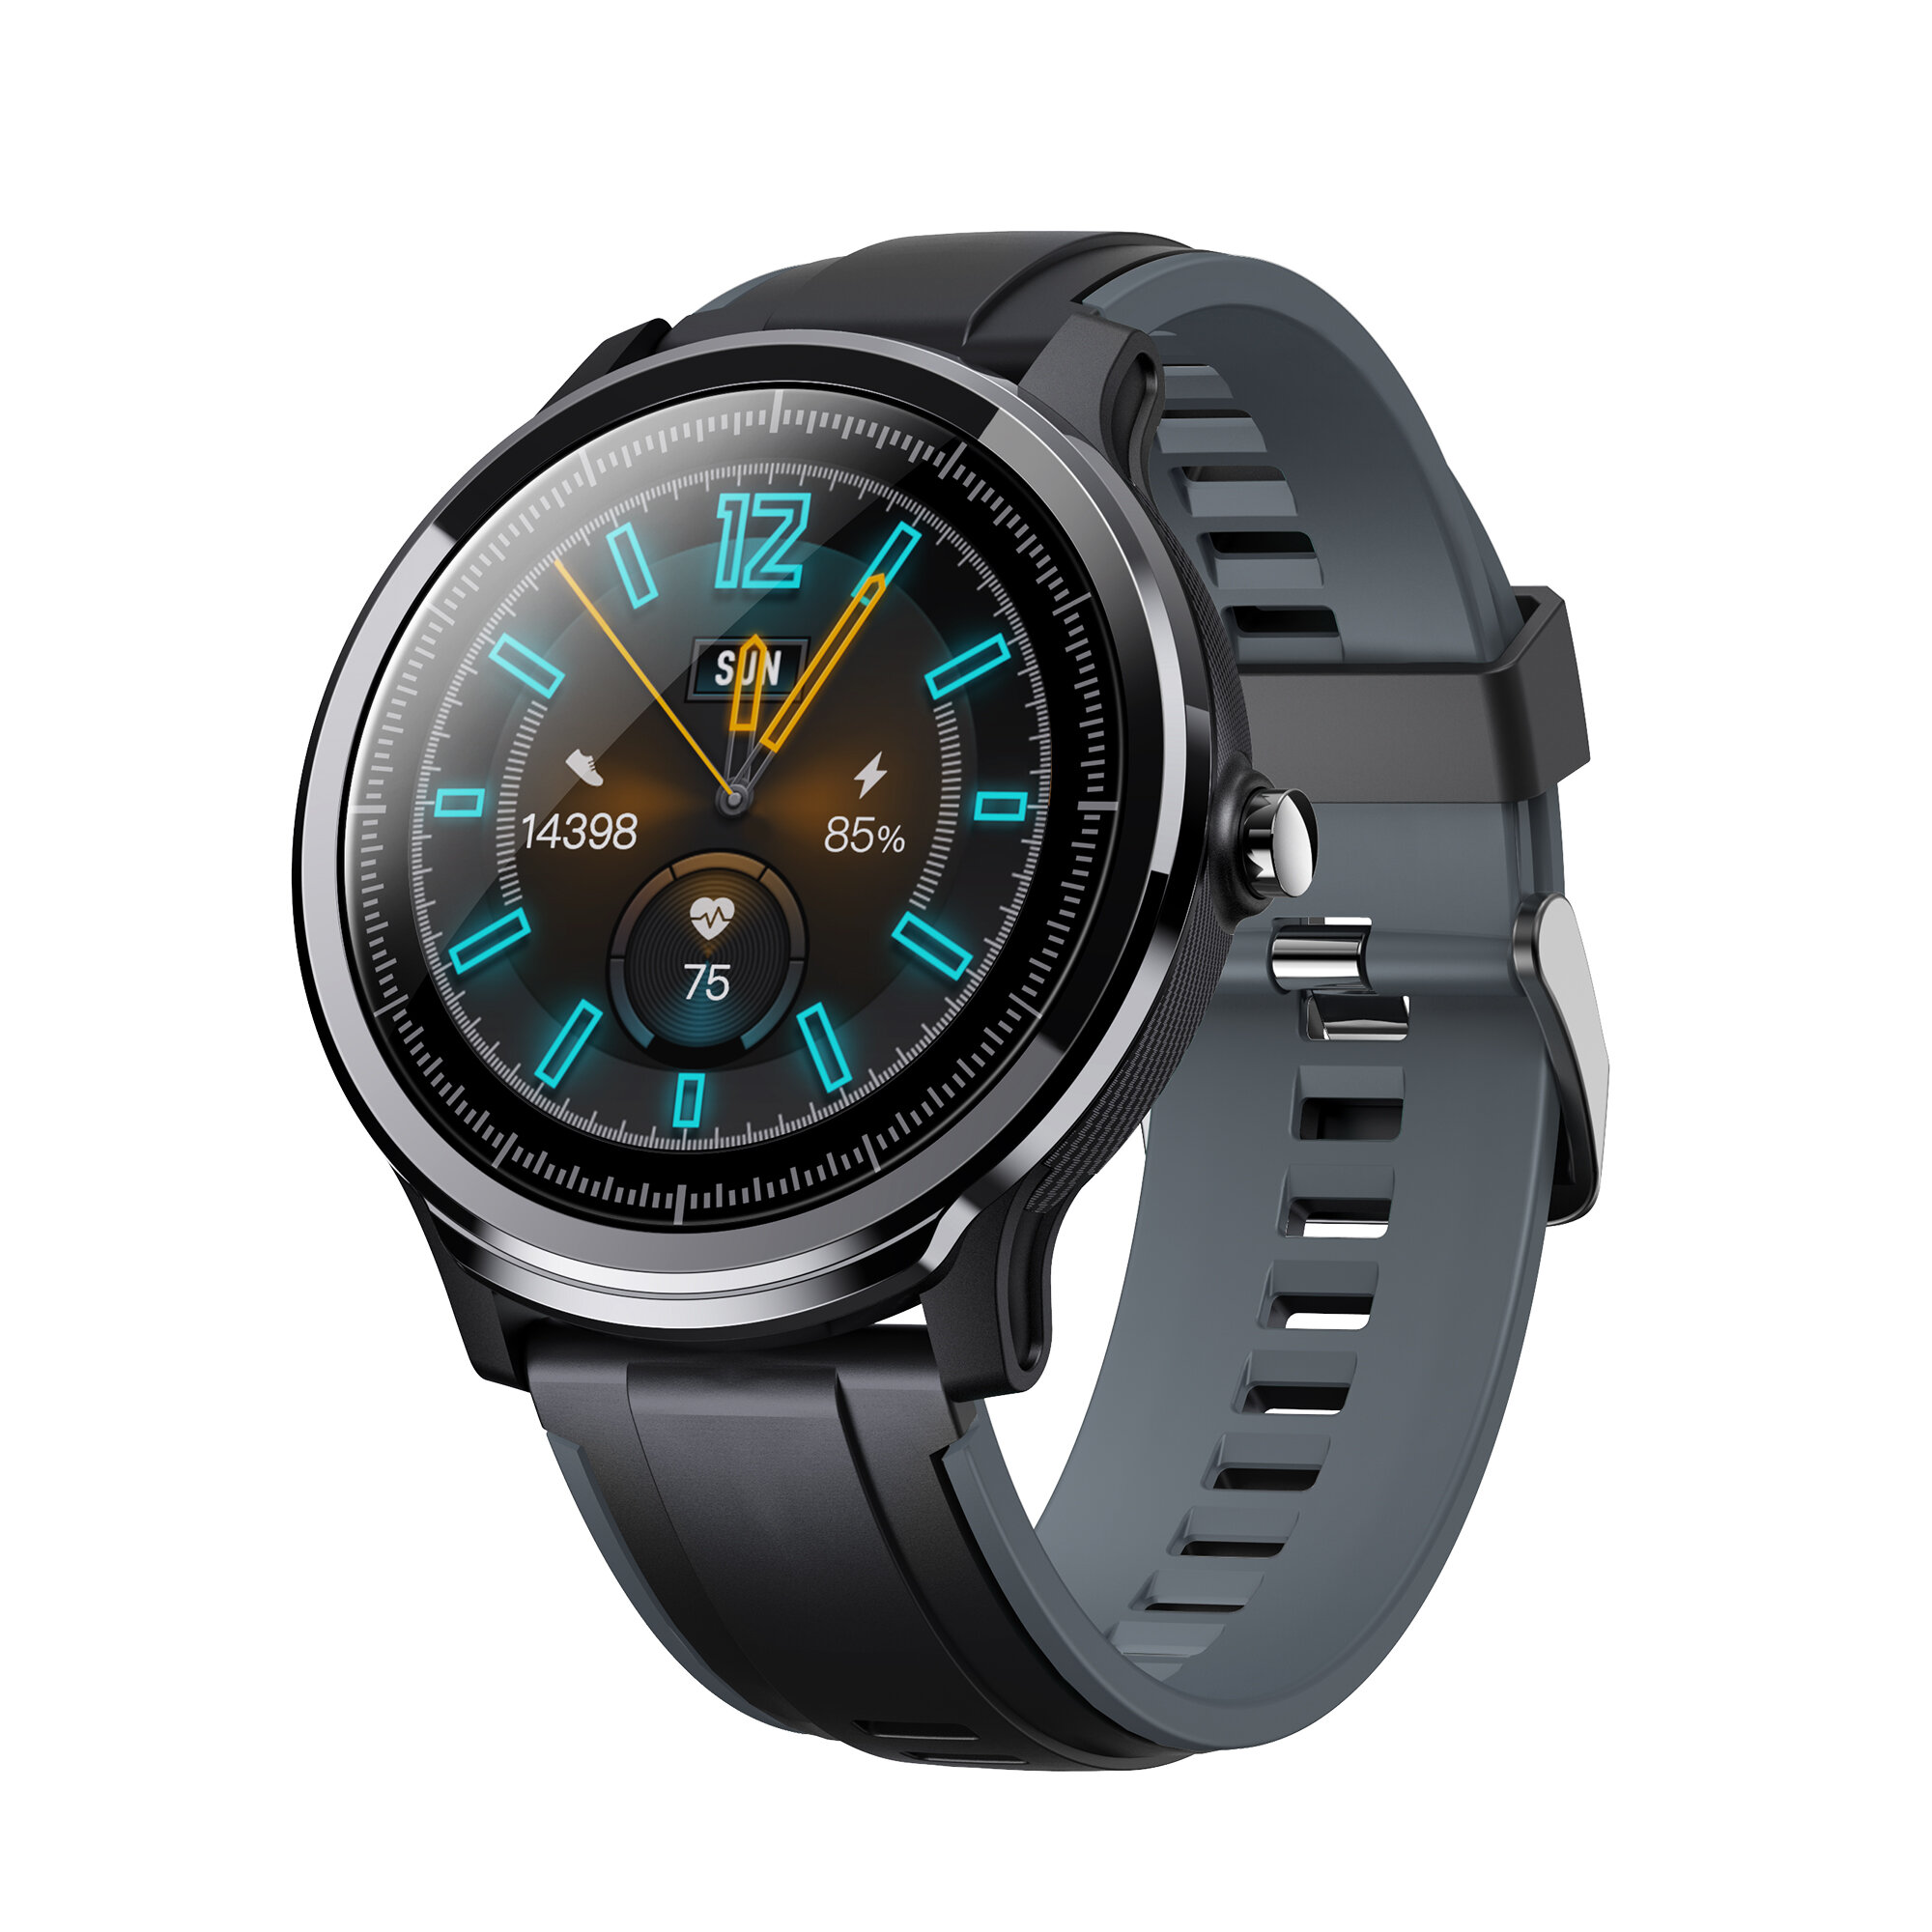 Smartwatch Kospet Probe za $32.49 / ~120zł